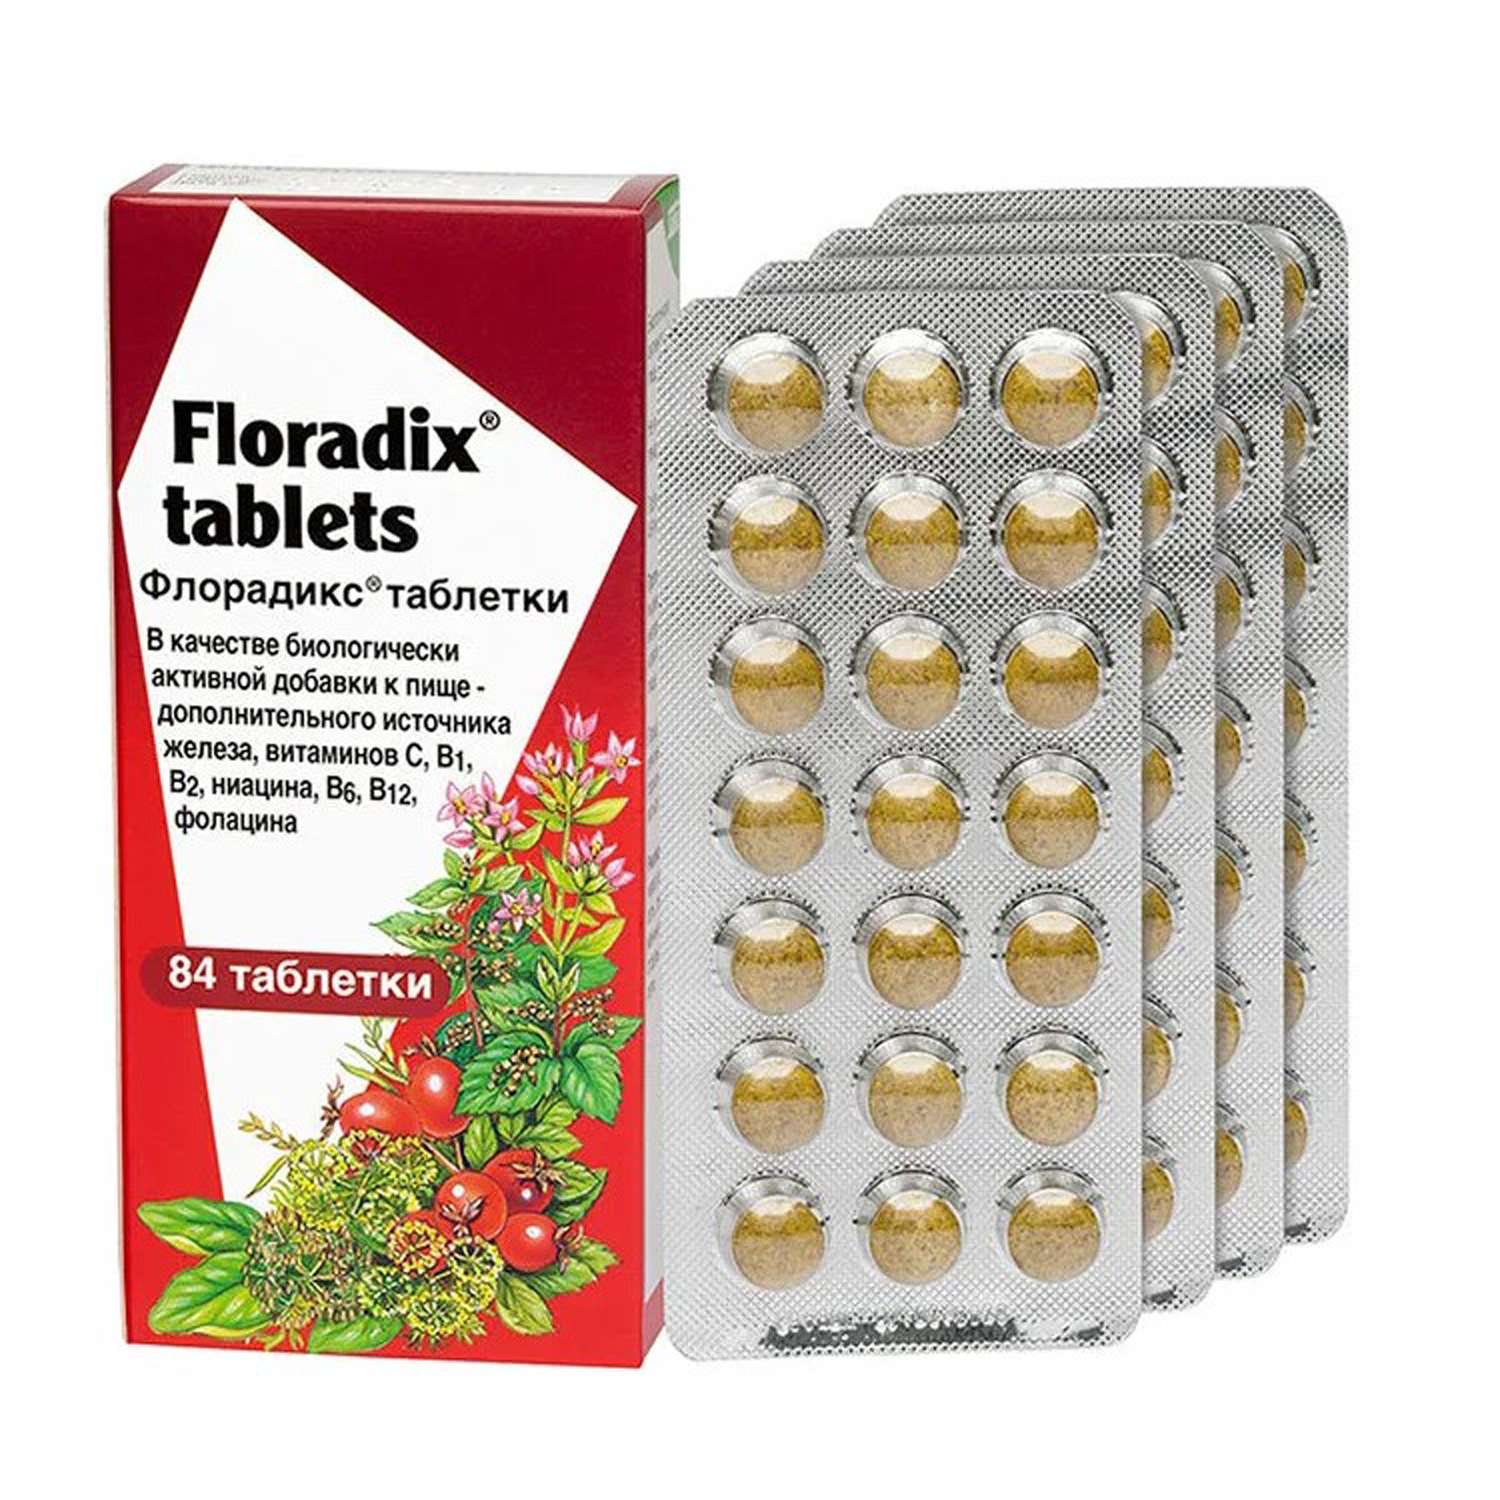 Биологически активная добавка Salus к пище флорадикс 84 таблетки - фото 2